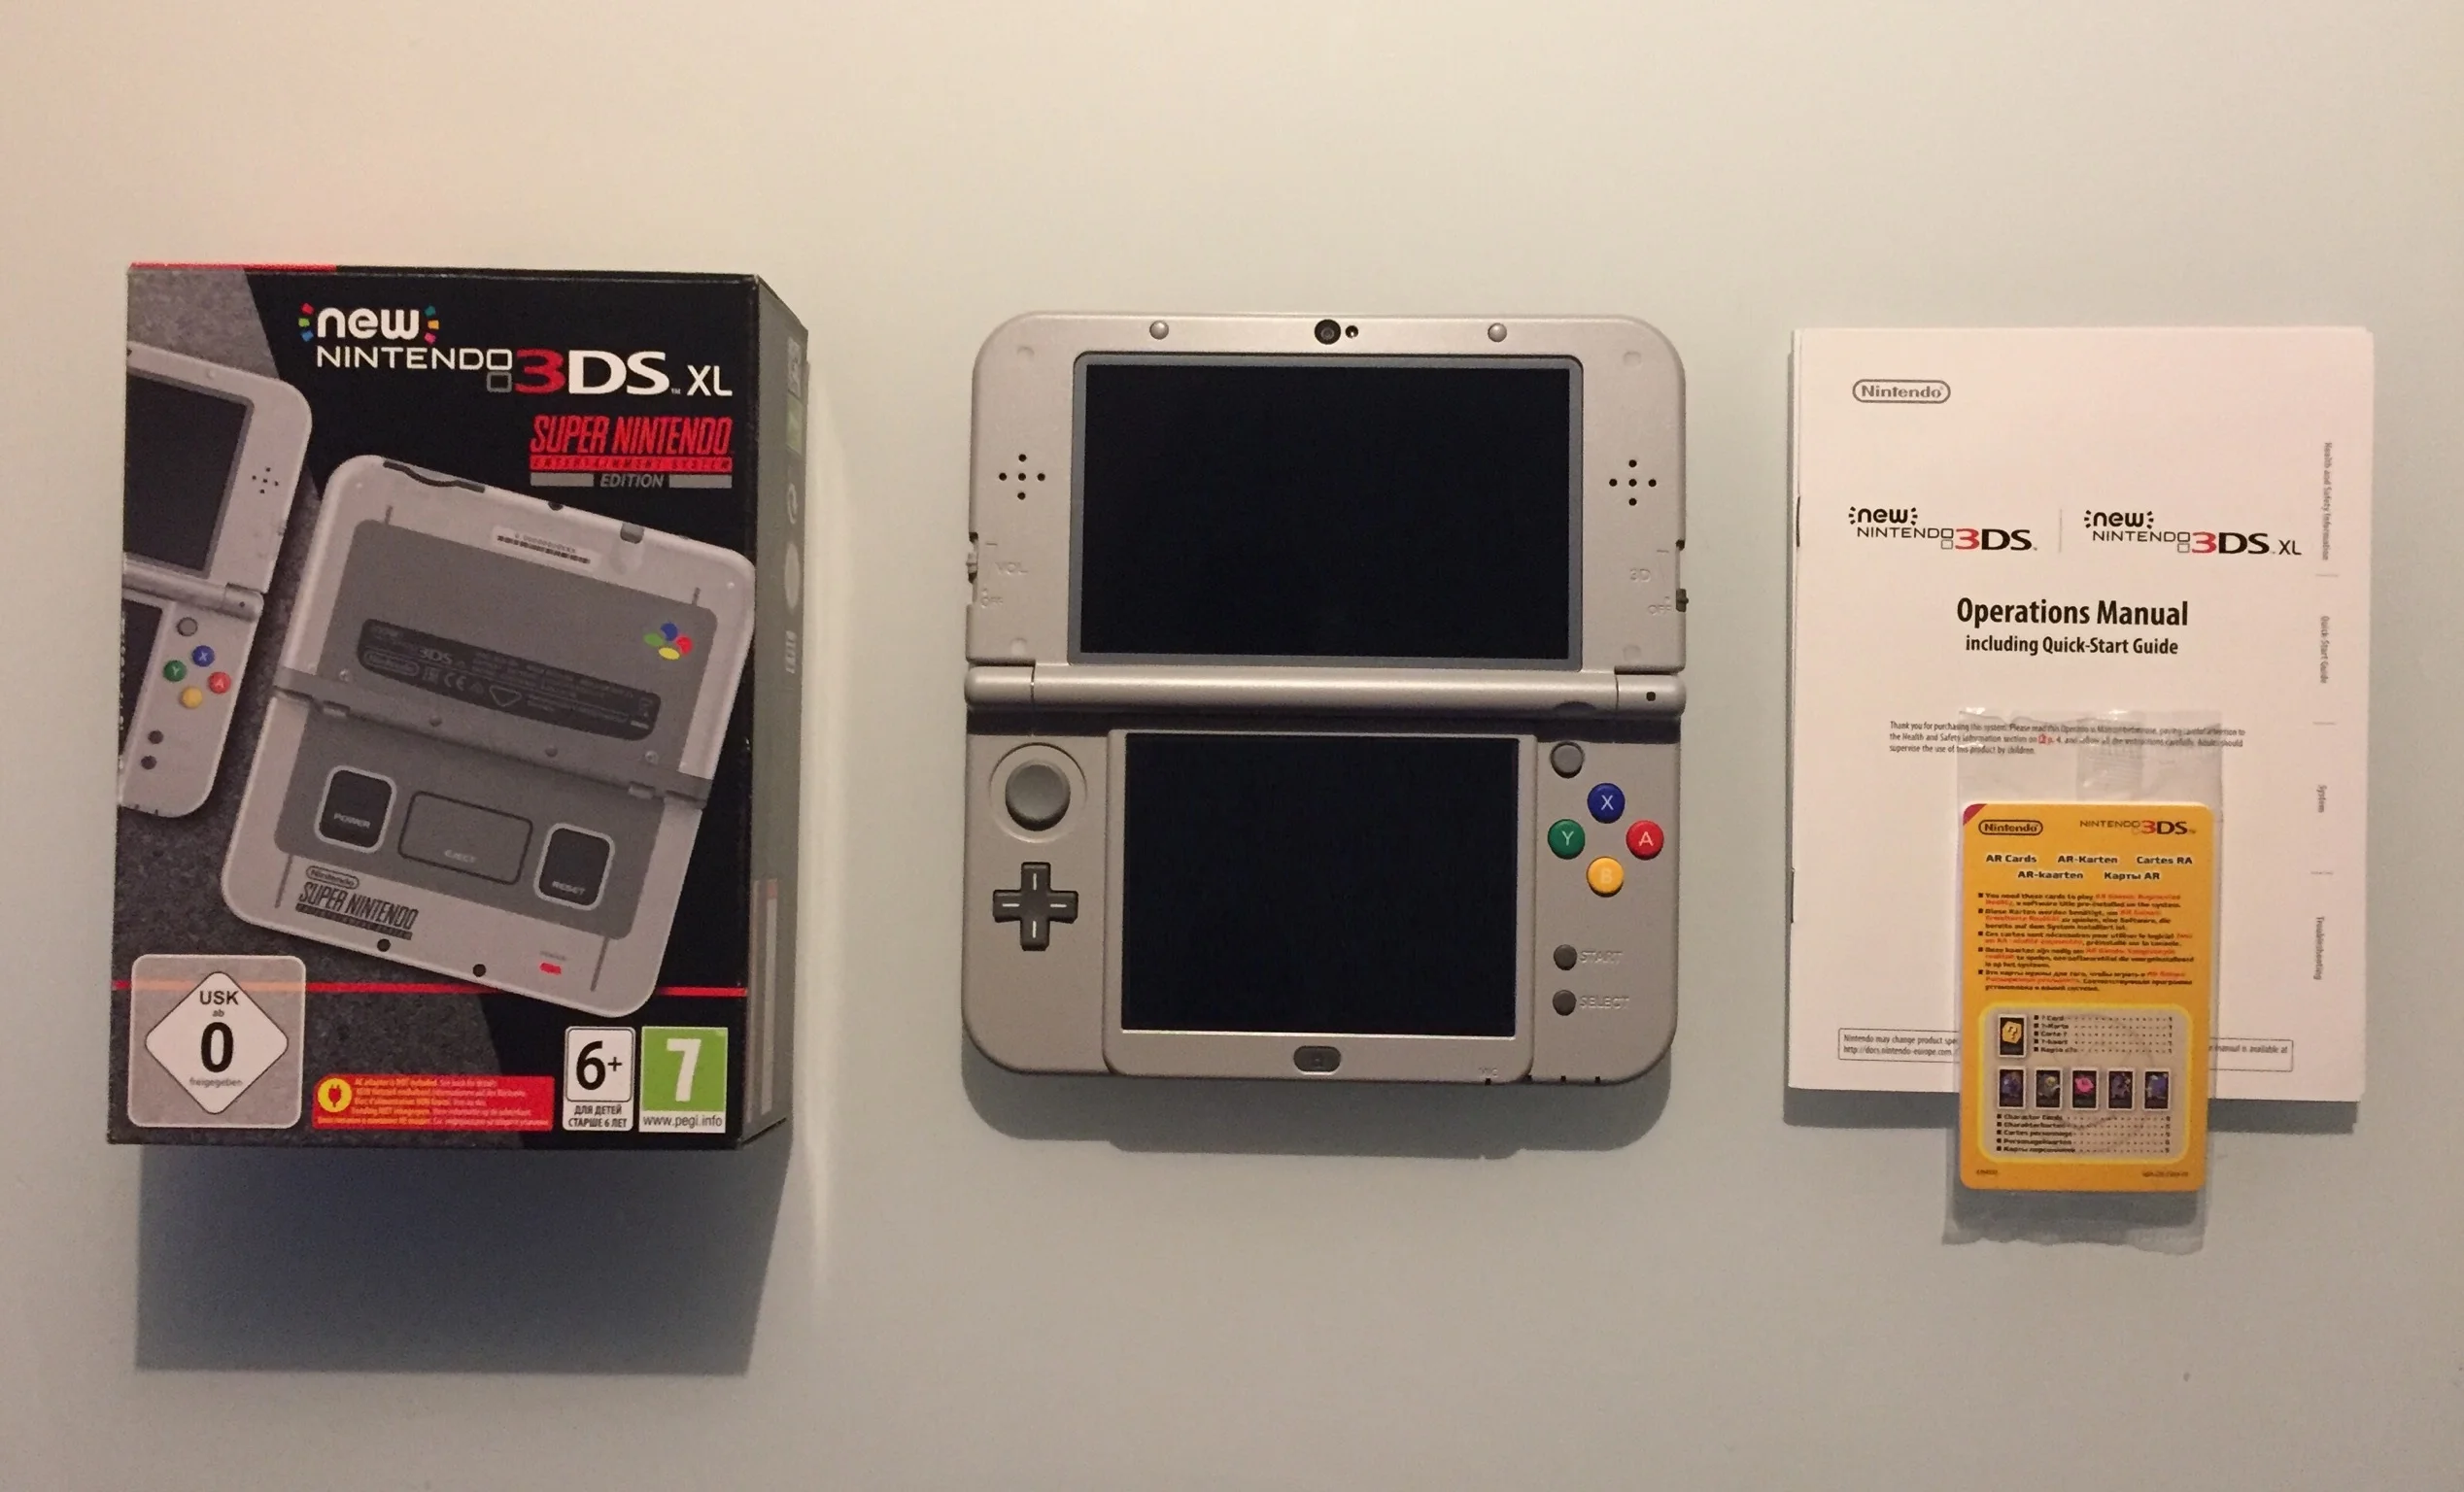  New Nintendo 3DS XL Super Nintendo Console [EU]